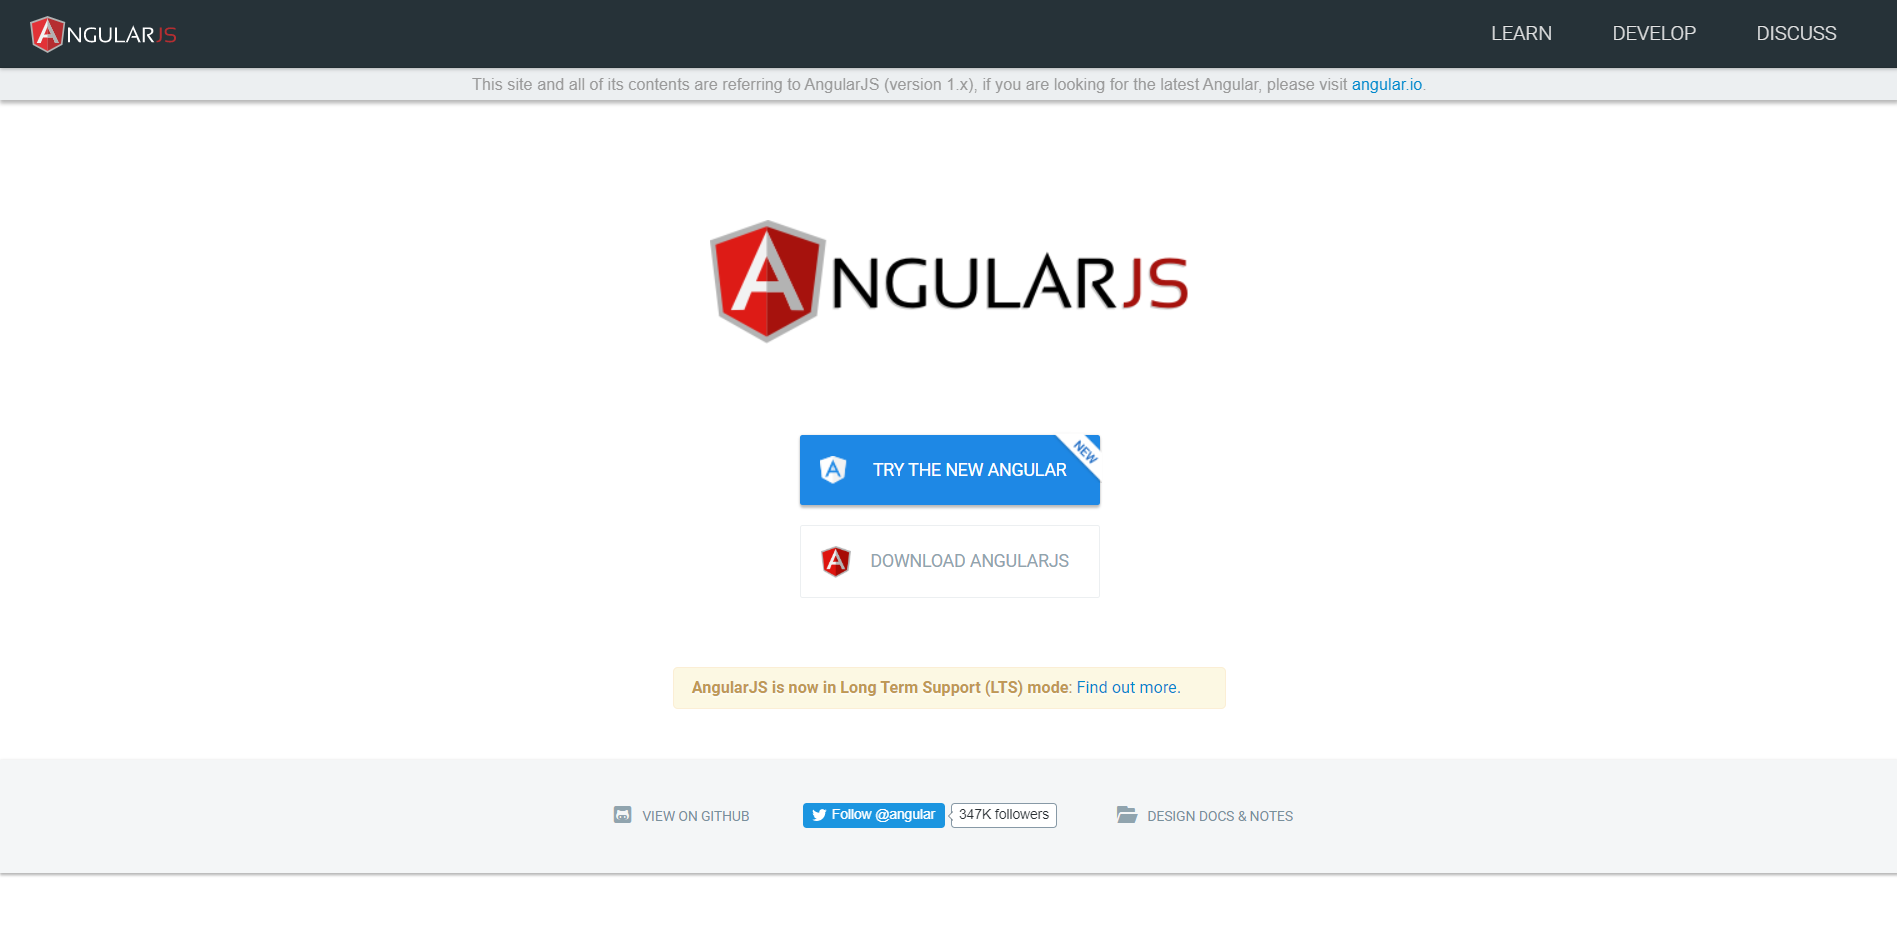 AngularJS landing page